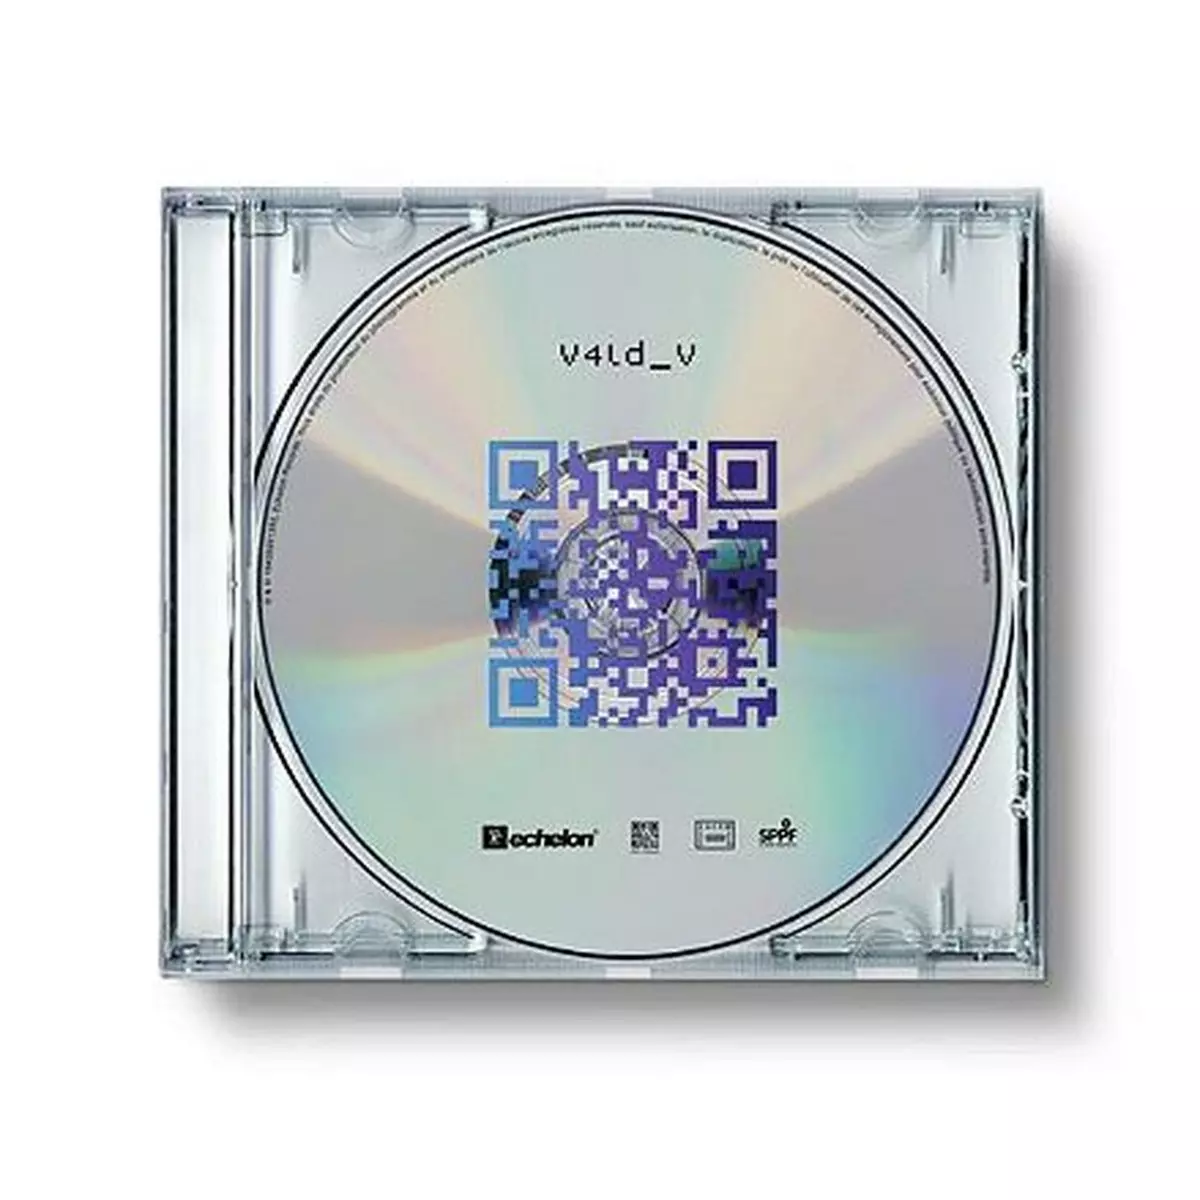 Vald - V CD